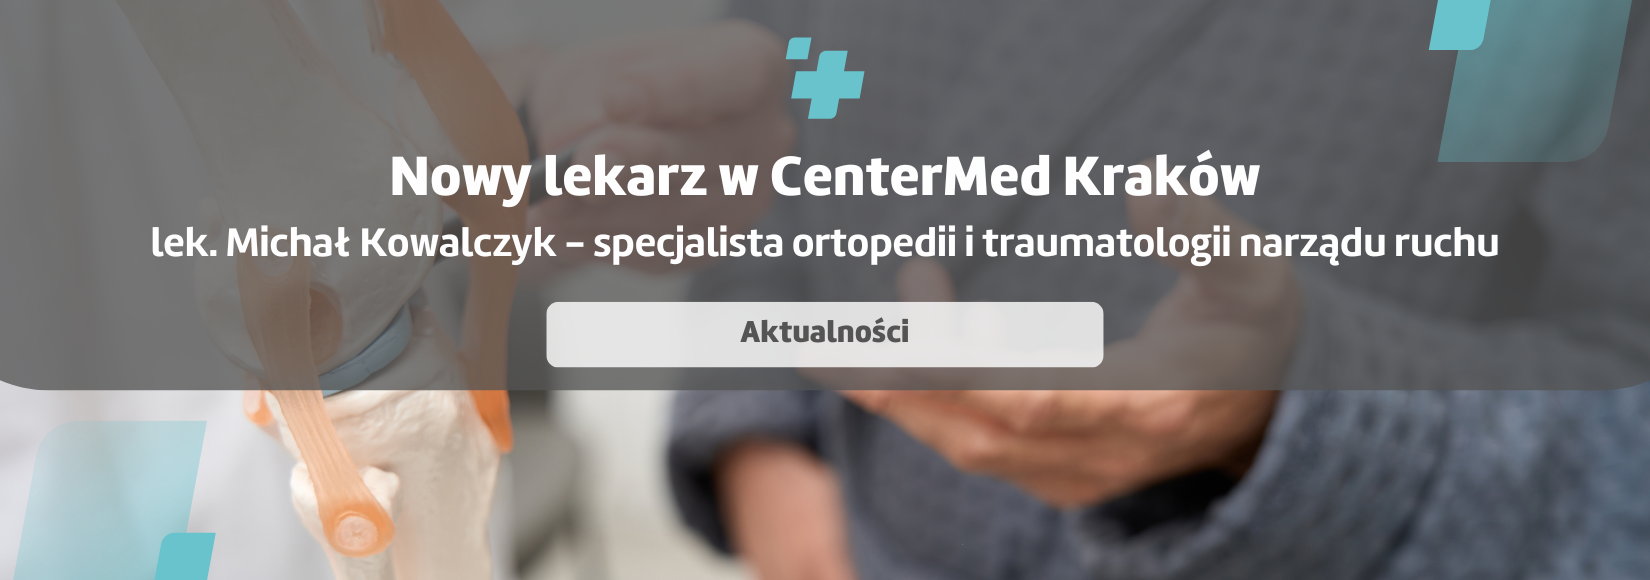 Nowy specjalista - Kraków - lek. Michał Kowalczyk - spec. ortopedii i traumatologii narządu ruchu